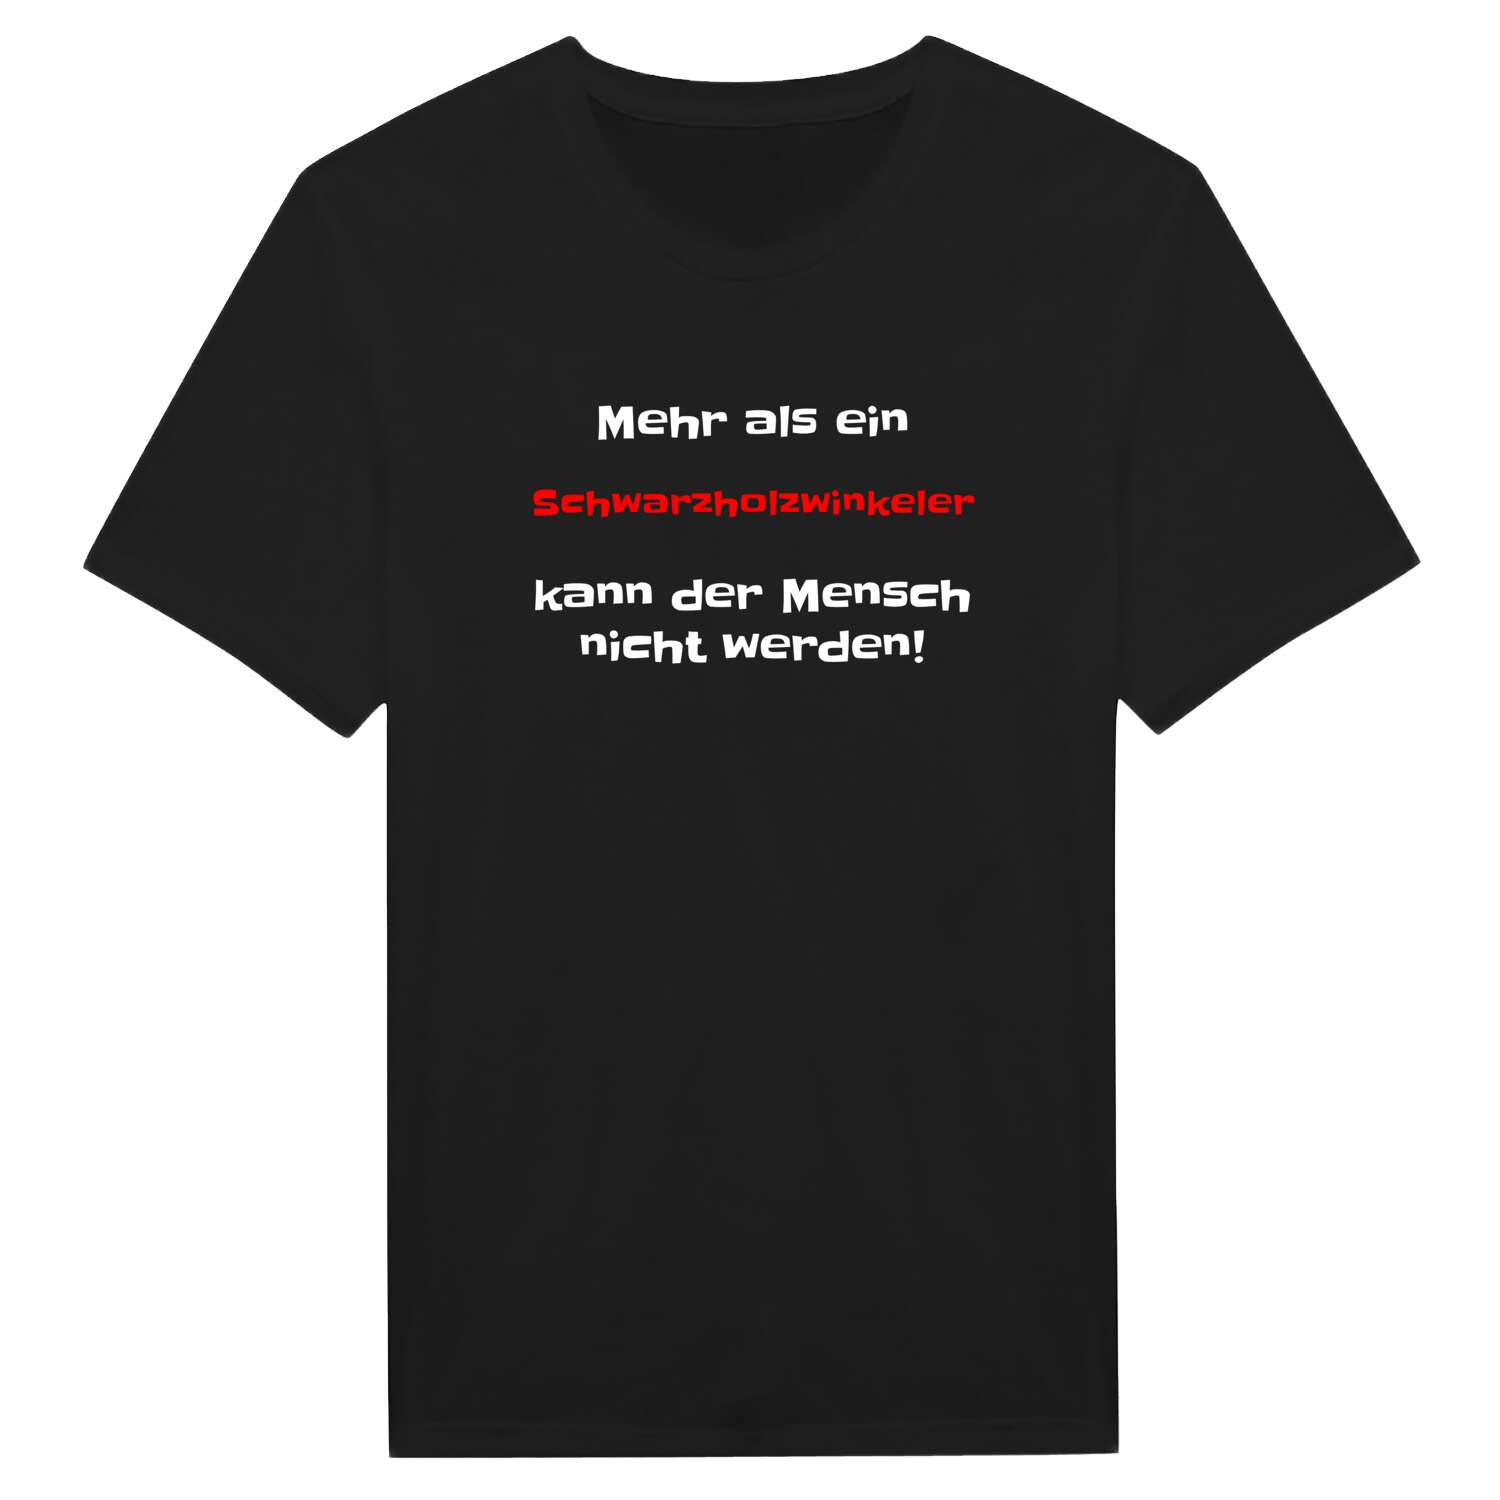 Schwarzholzwinkel T-Shirt »Mehr als ein«